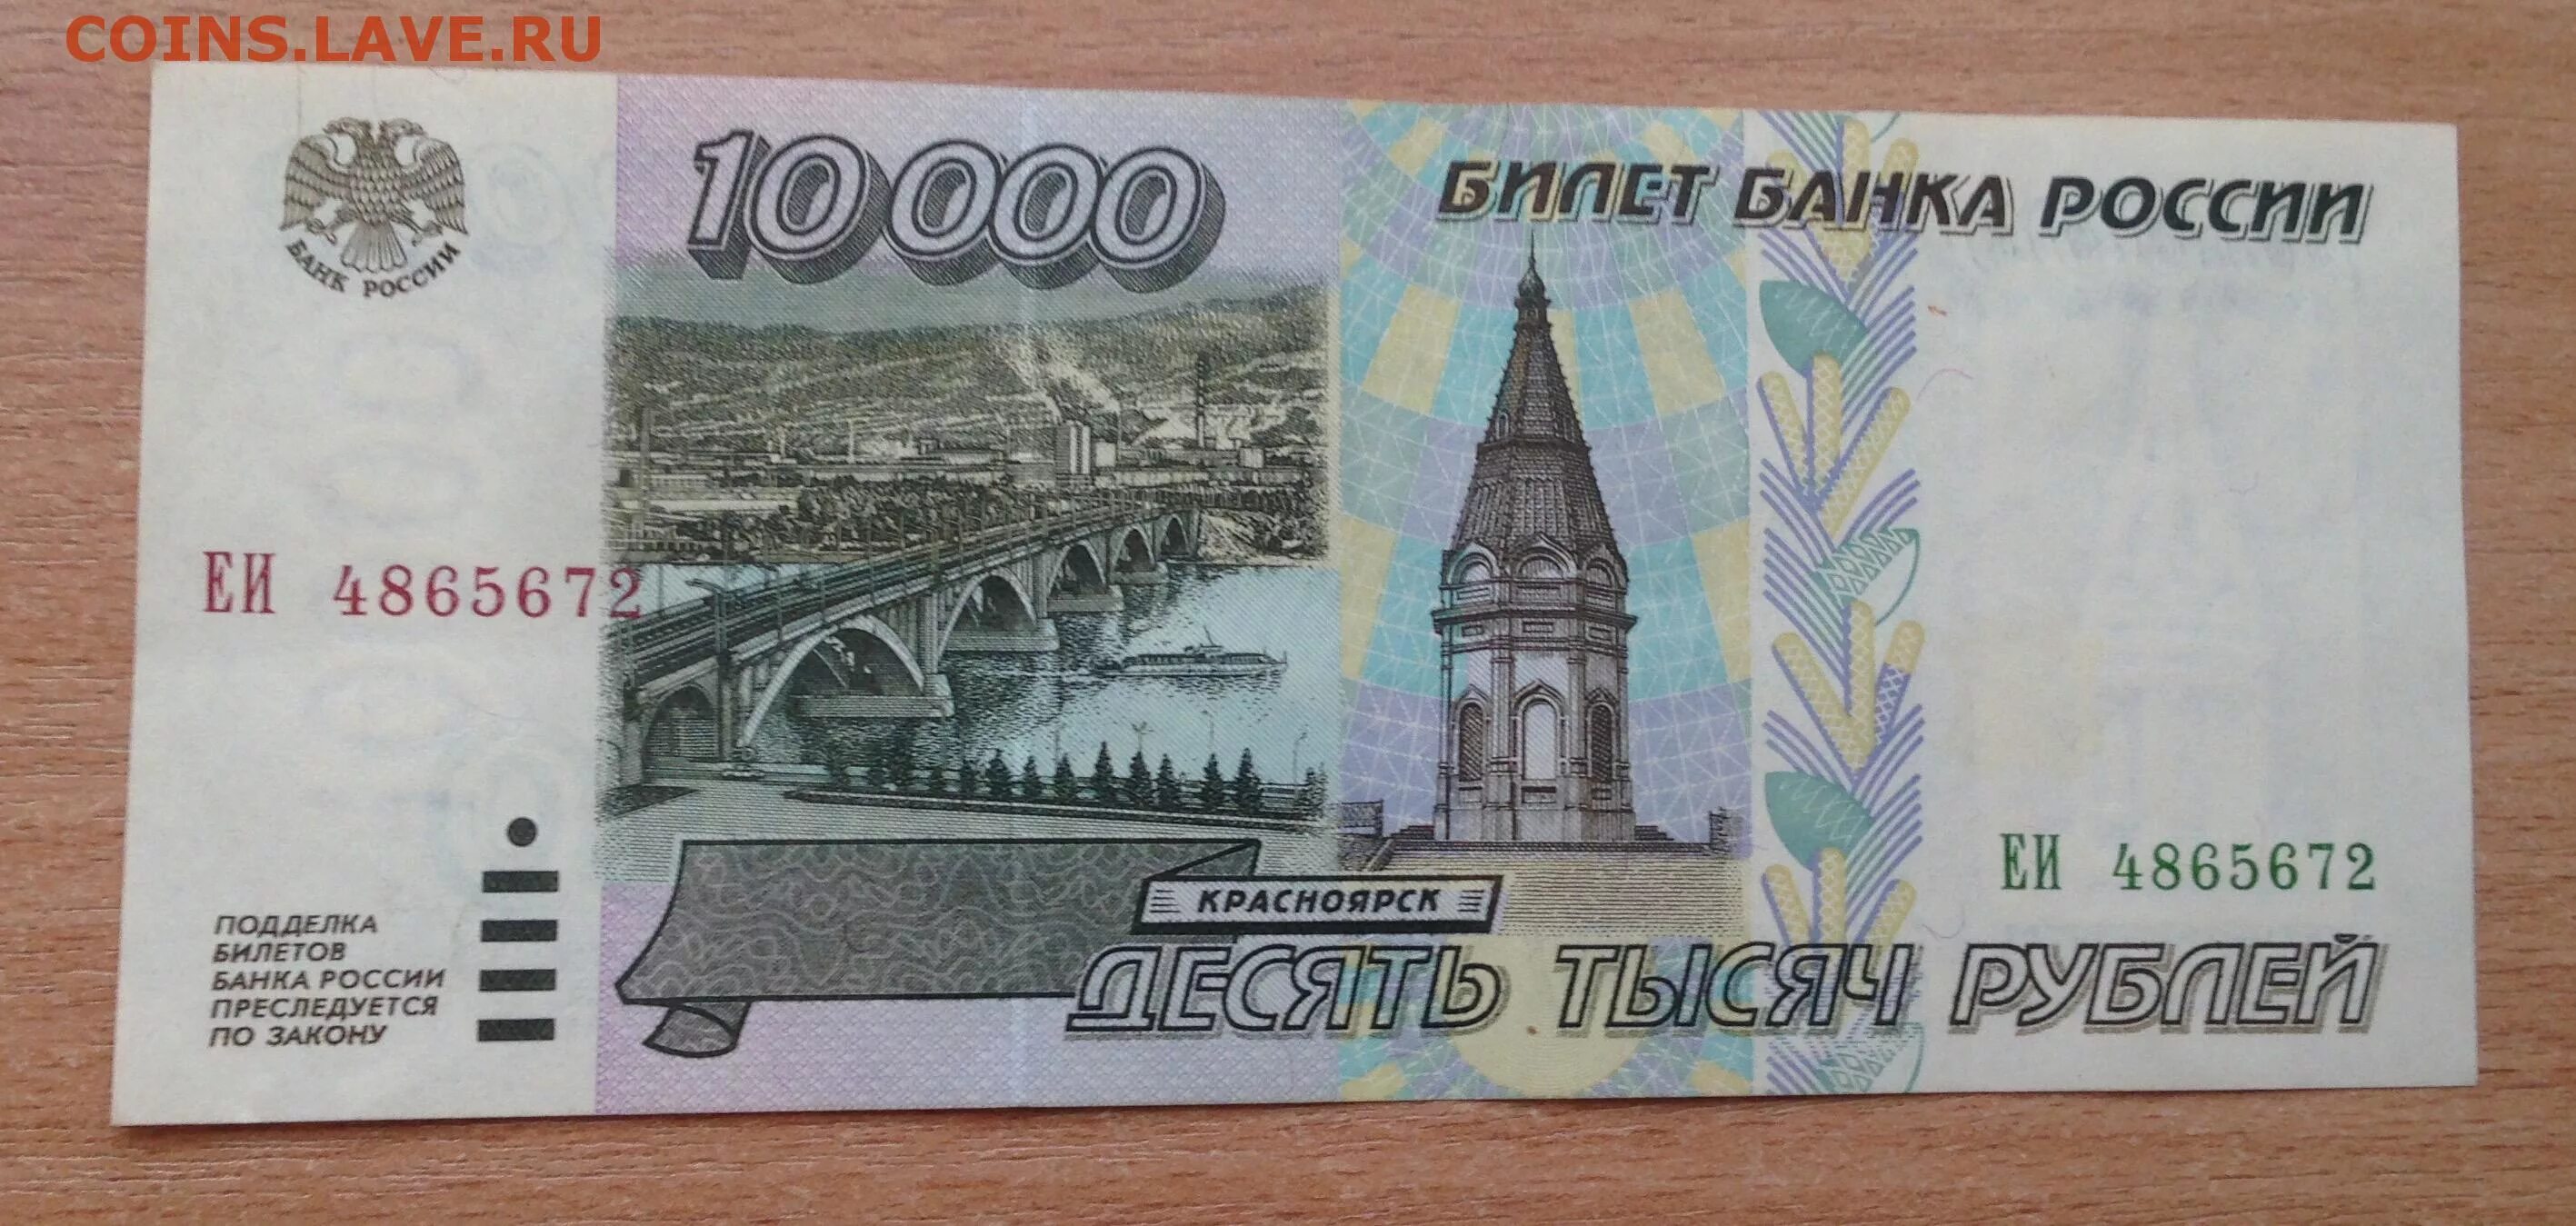 10000 в рублях на сегодня в россии. 10000 Рублей 1995 года. 10000 Рублей купюра 1995. 10000 Рублей 98 года. Купюра 10000 рублей 1995 года можно ли обменять в Сбербанке.